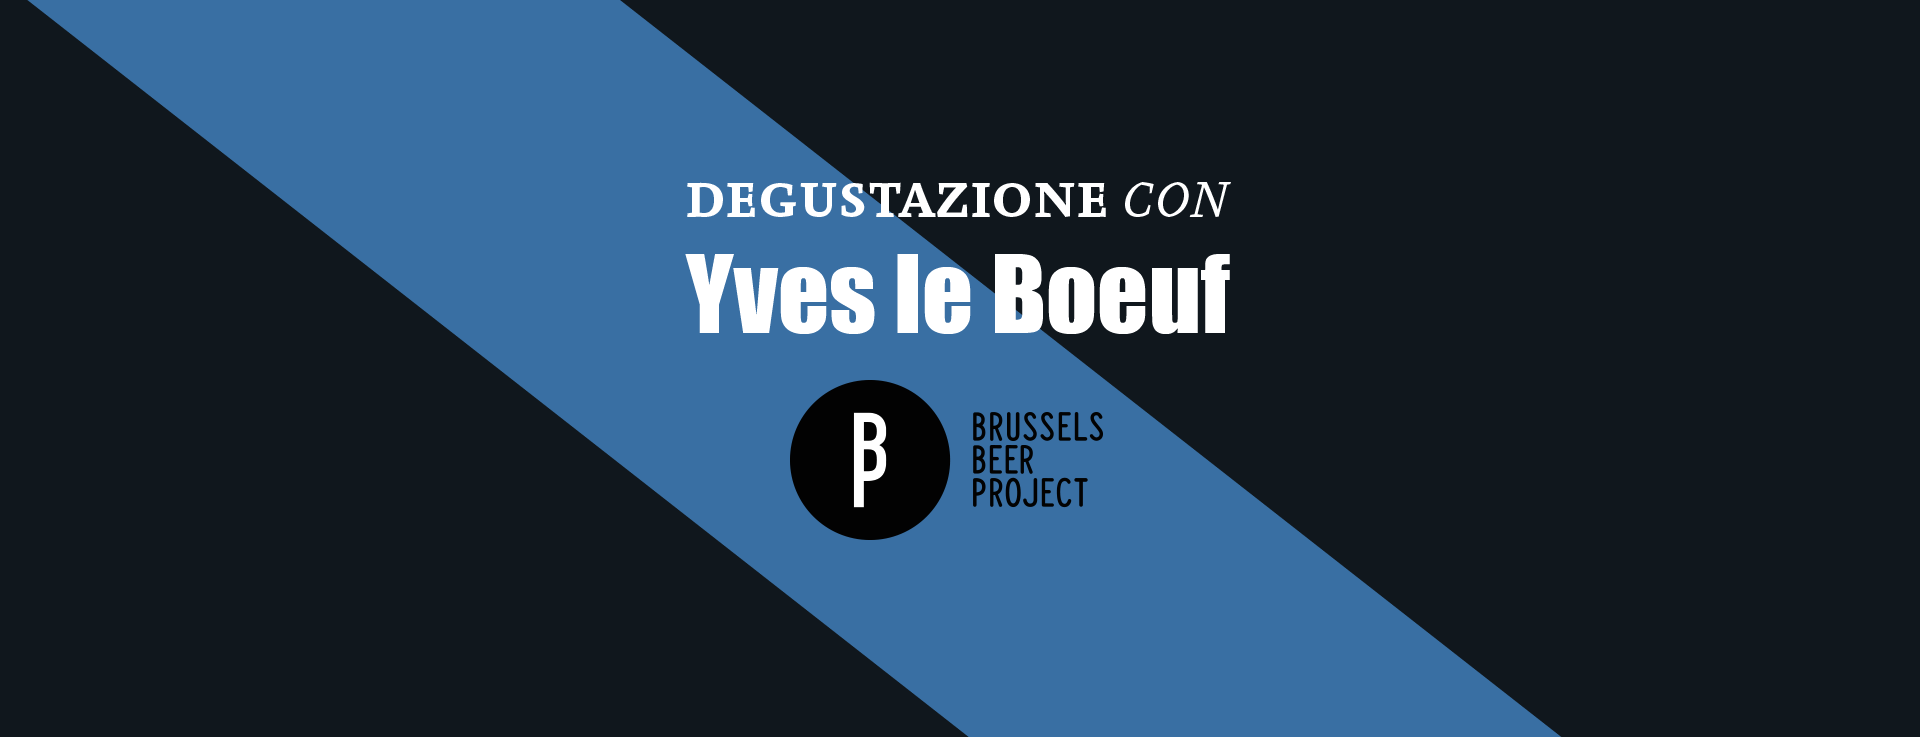 Degustazione con Yves Le Boeuf di Brussels beer Project al Dash Kitchen